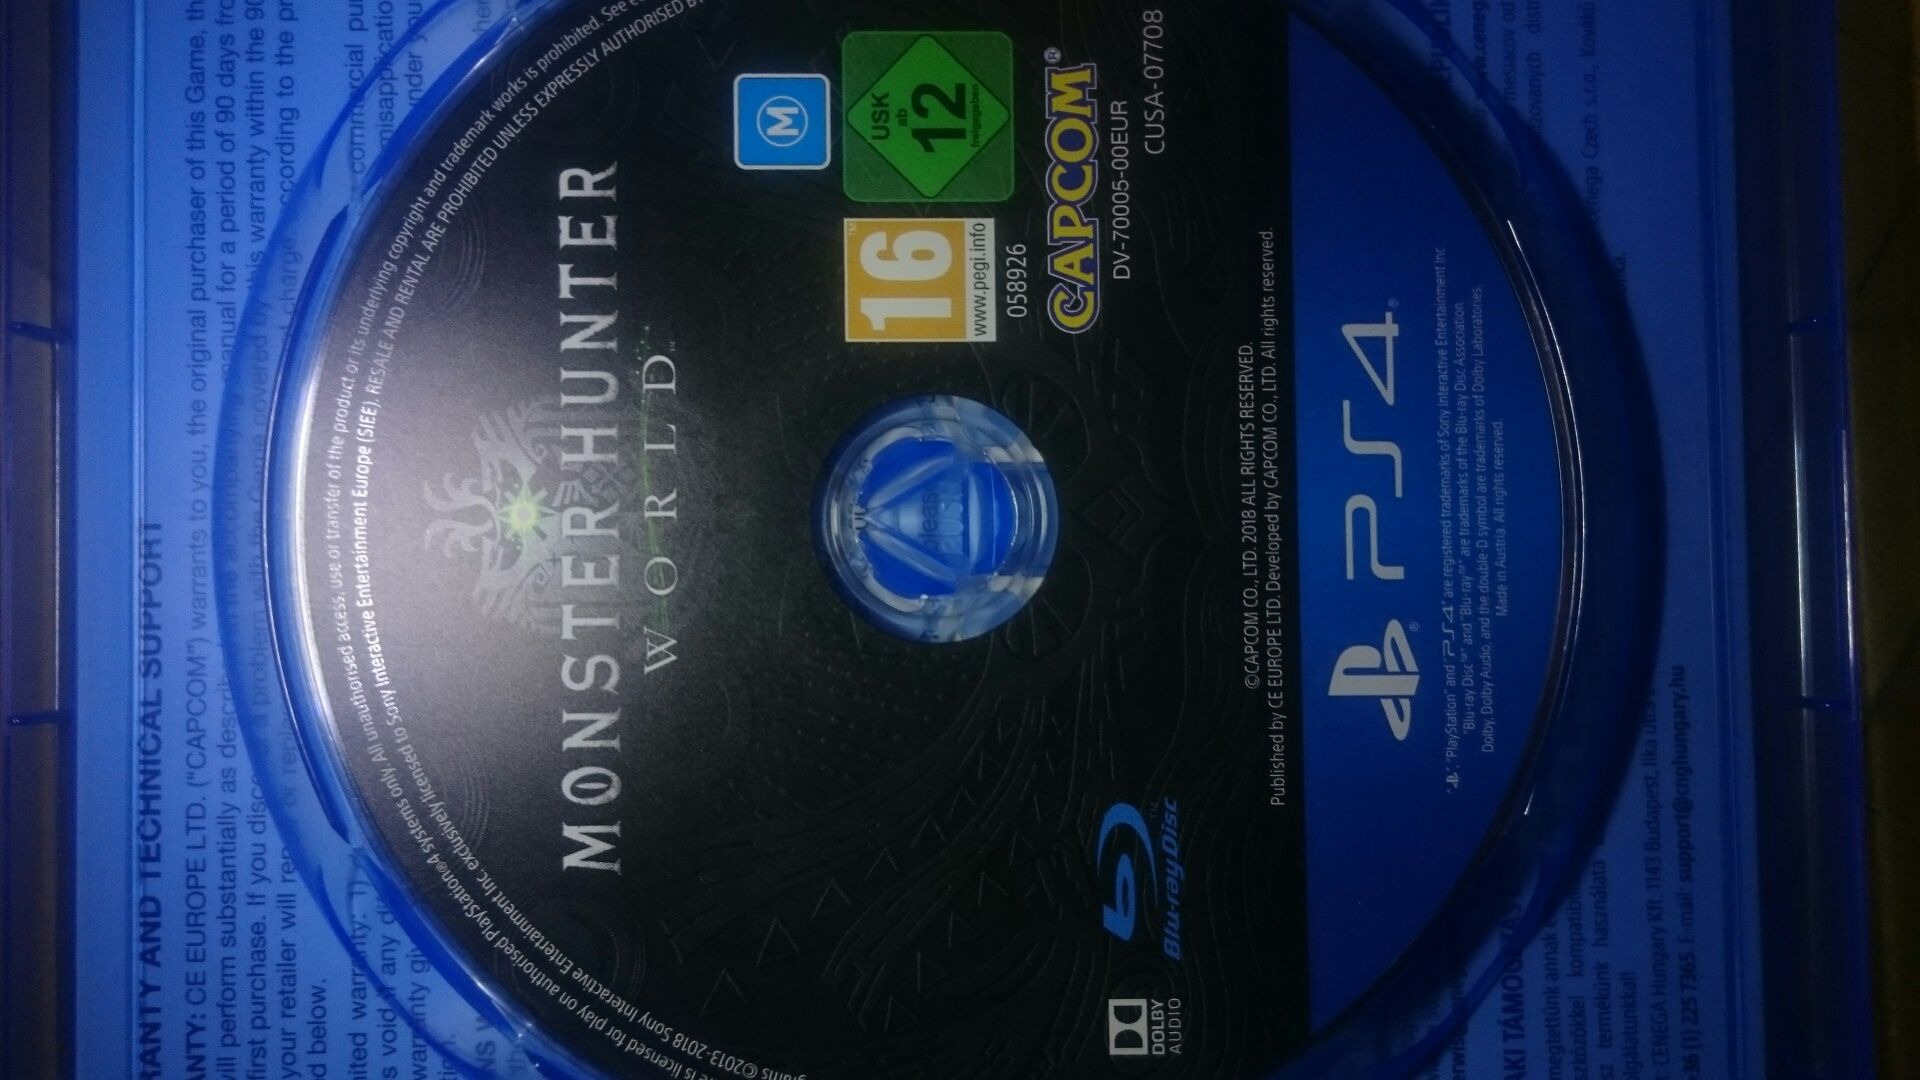 Gra Monster Hunter World PS4 polska wersja playstation 4 gta